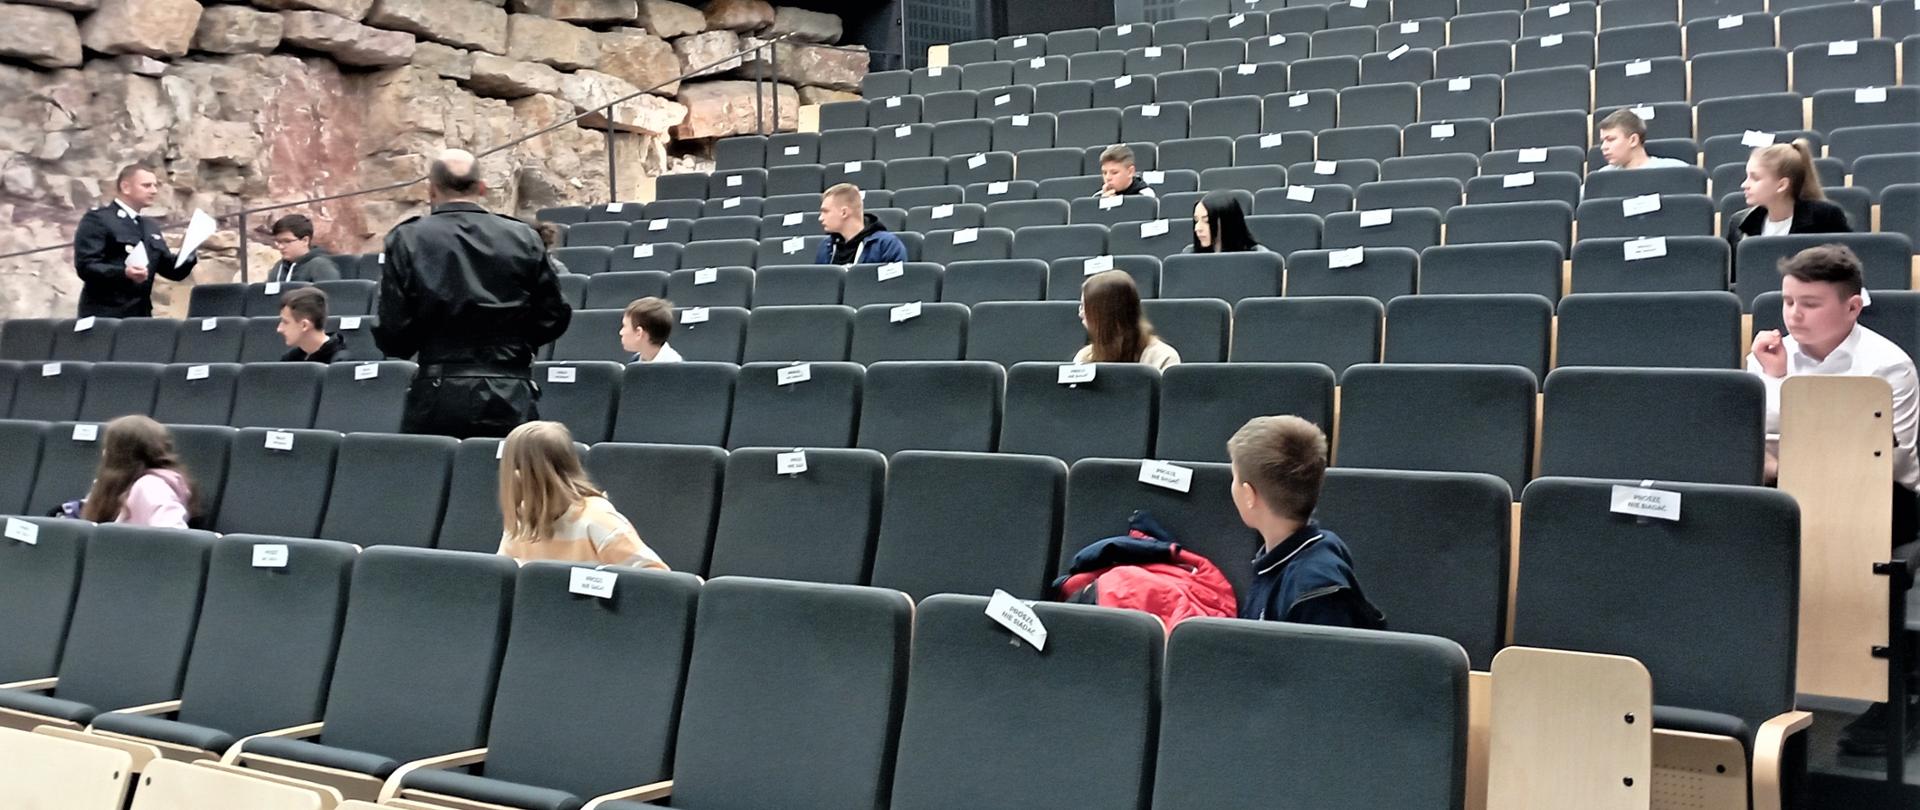 Na zdjęciu przedstawiono uczestników Ogólnopolskiego Turnieju Wieży Pożarniczej w jednej z gmin powiatu kieleckiego. Zawodnicy siedzą w pięknej auli a członkowie jury wyjaśniają sposób wypełniania testu.